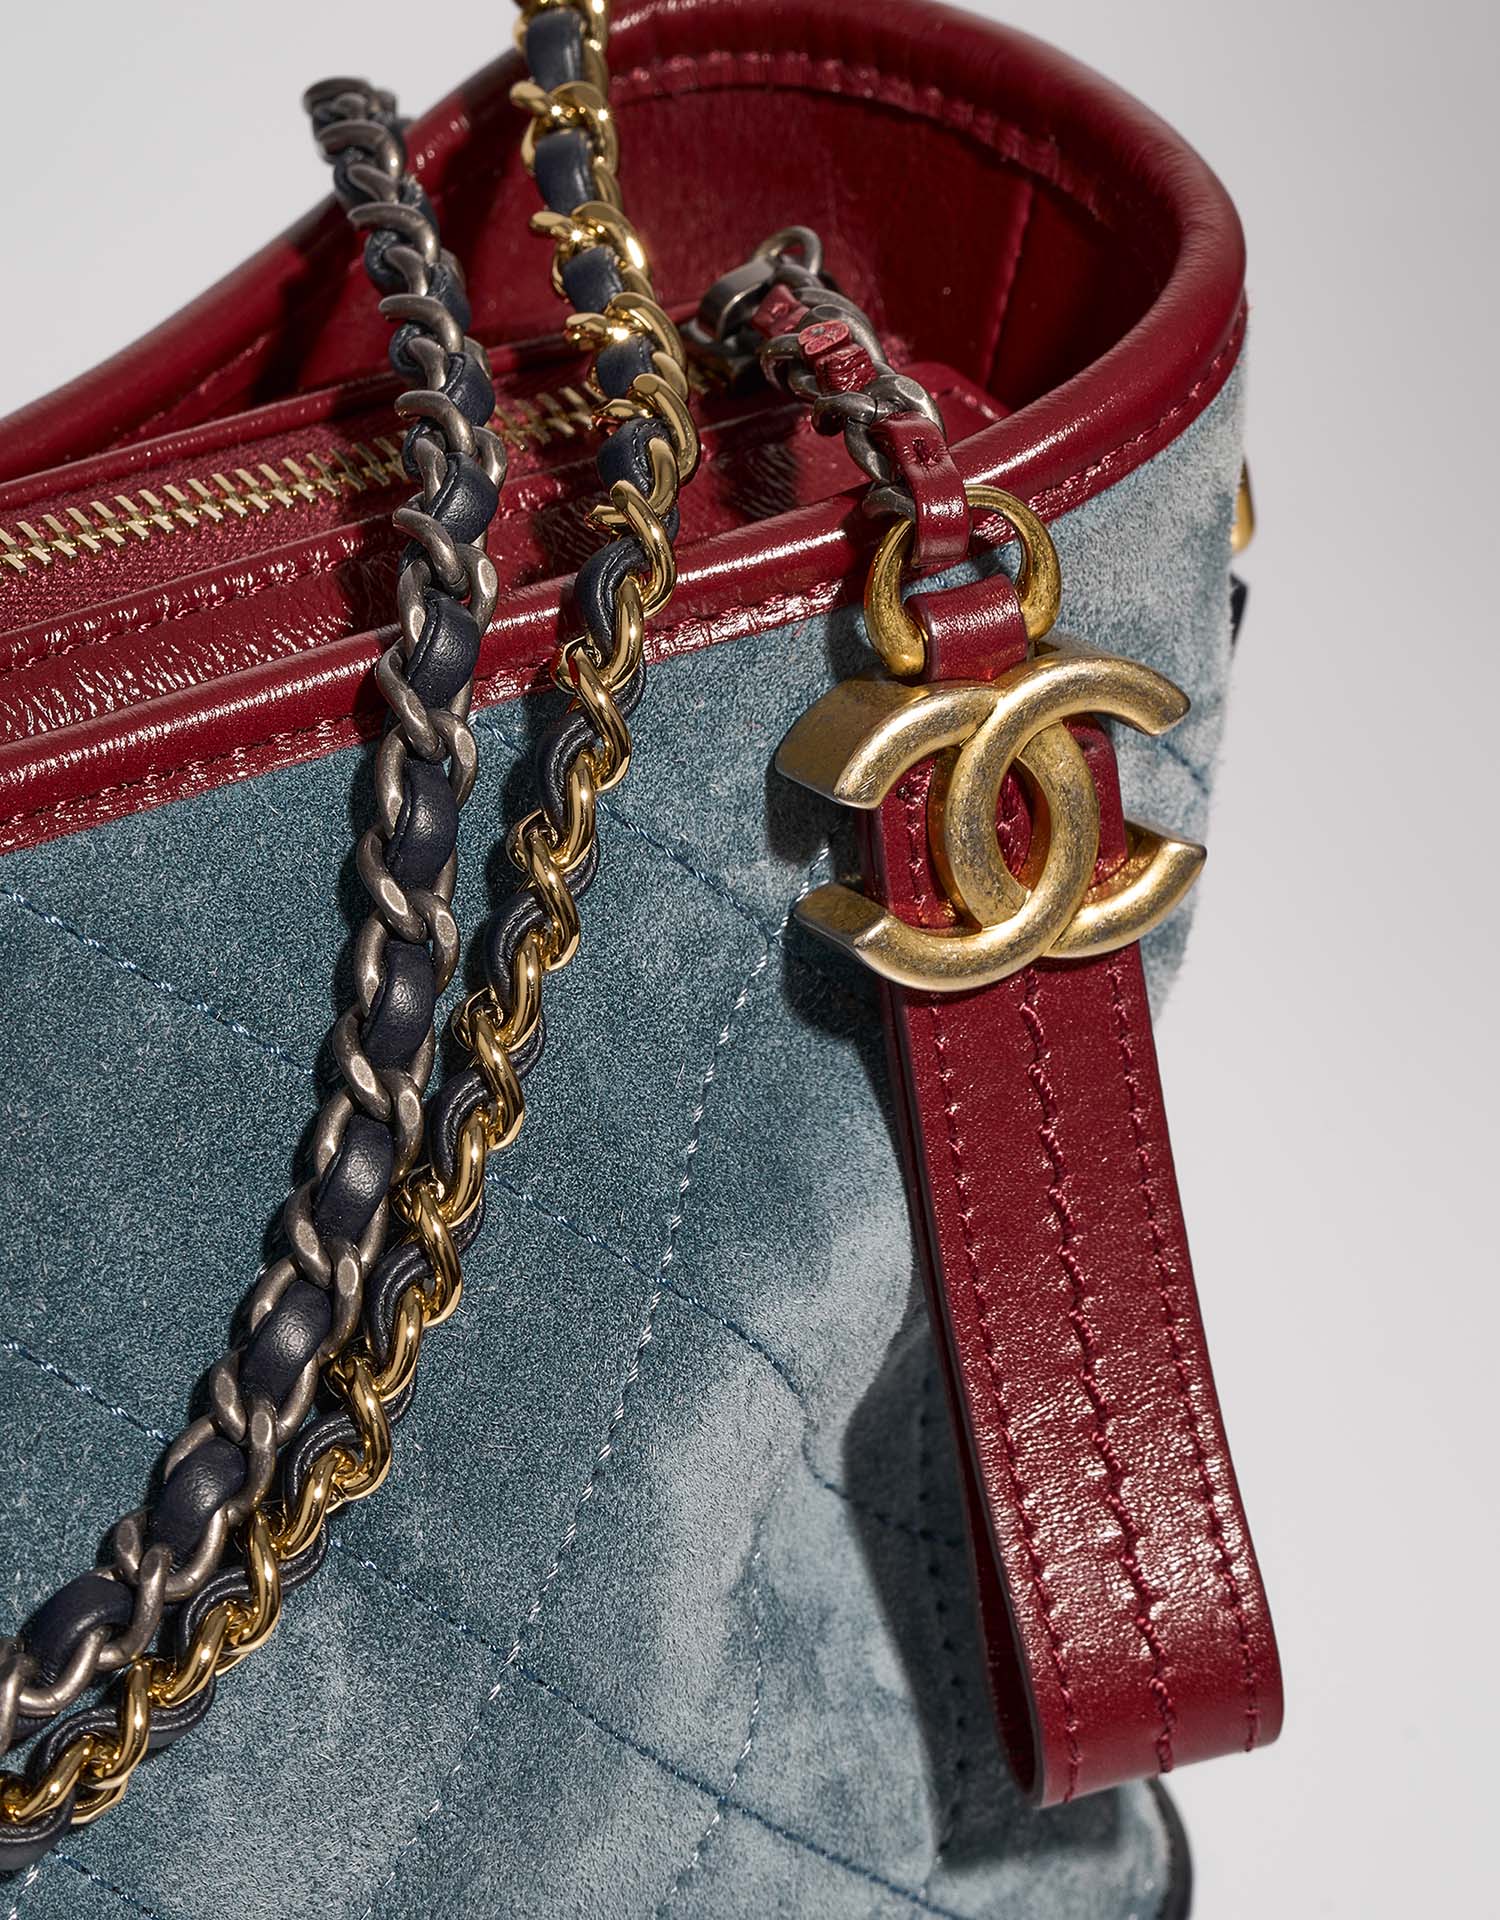 Chanel Gabrielle Medium Blau-Navy-Rot Verschluss-System | Verkaufen Sie Ihre Designer-Tasche auf Saclab.com